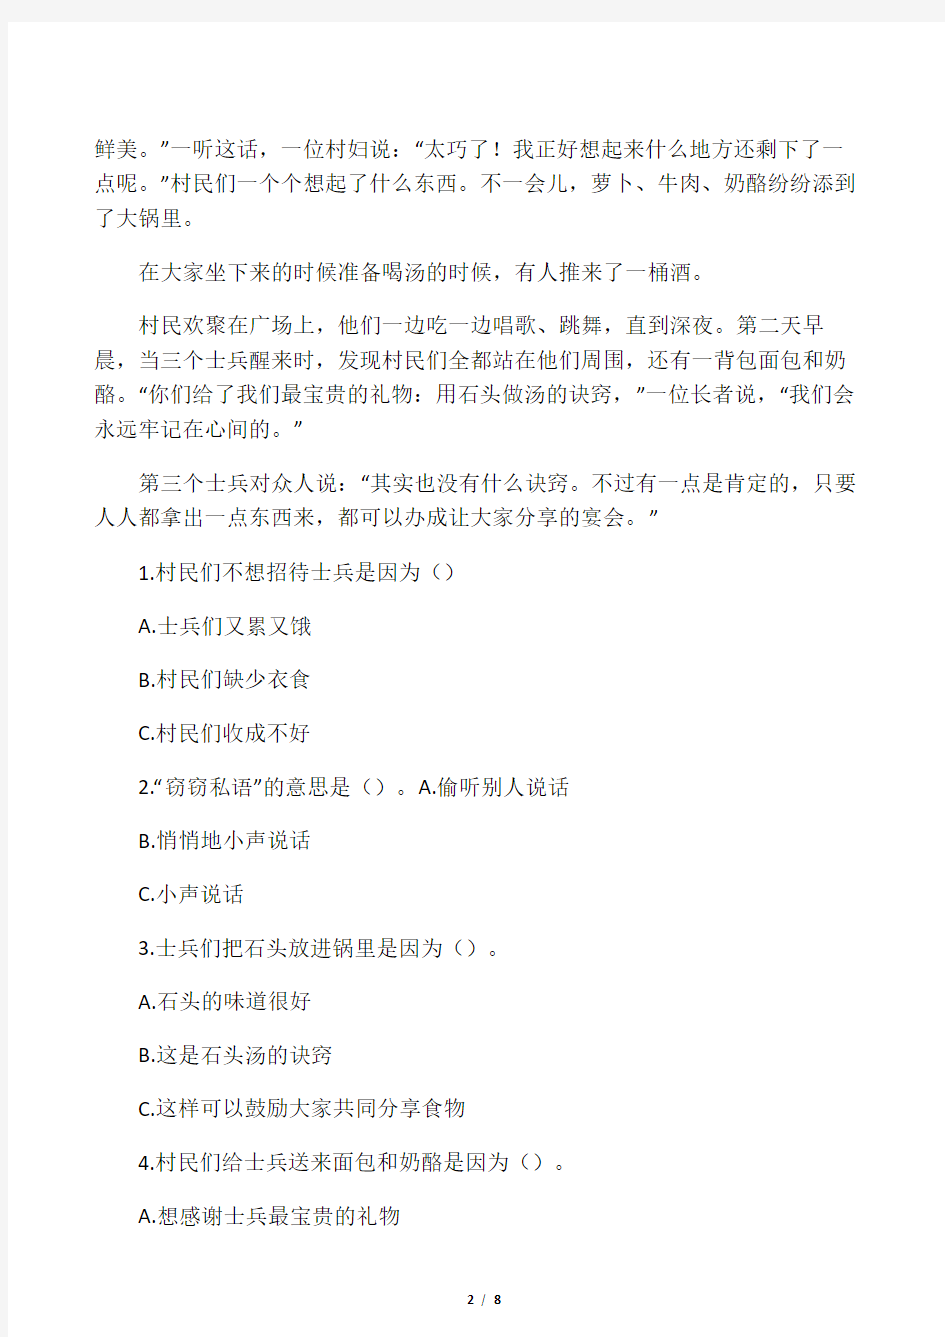 (完整版)中级汉语阅读期末考试试卷